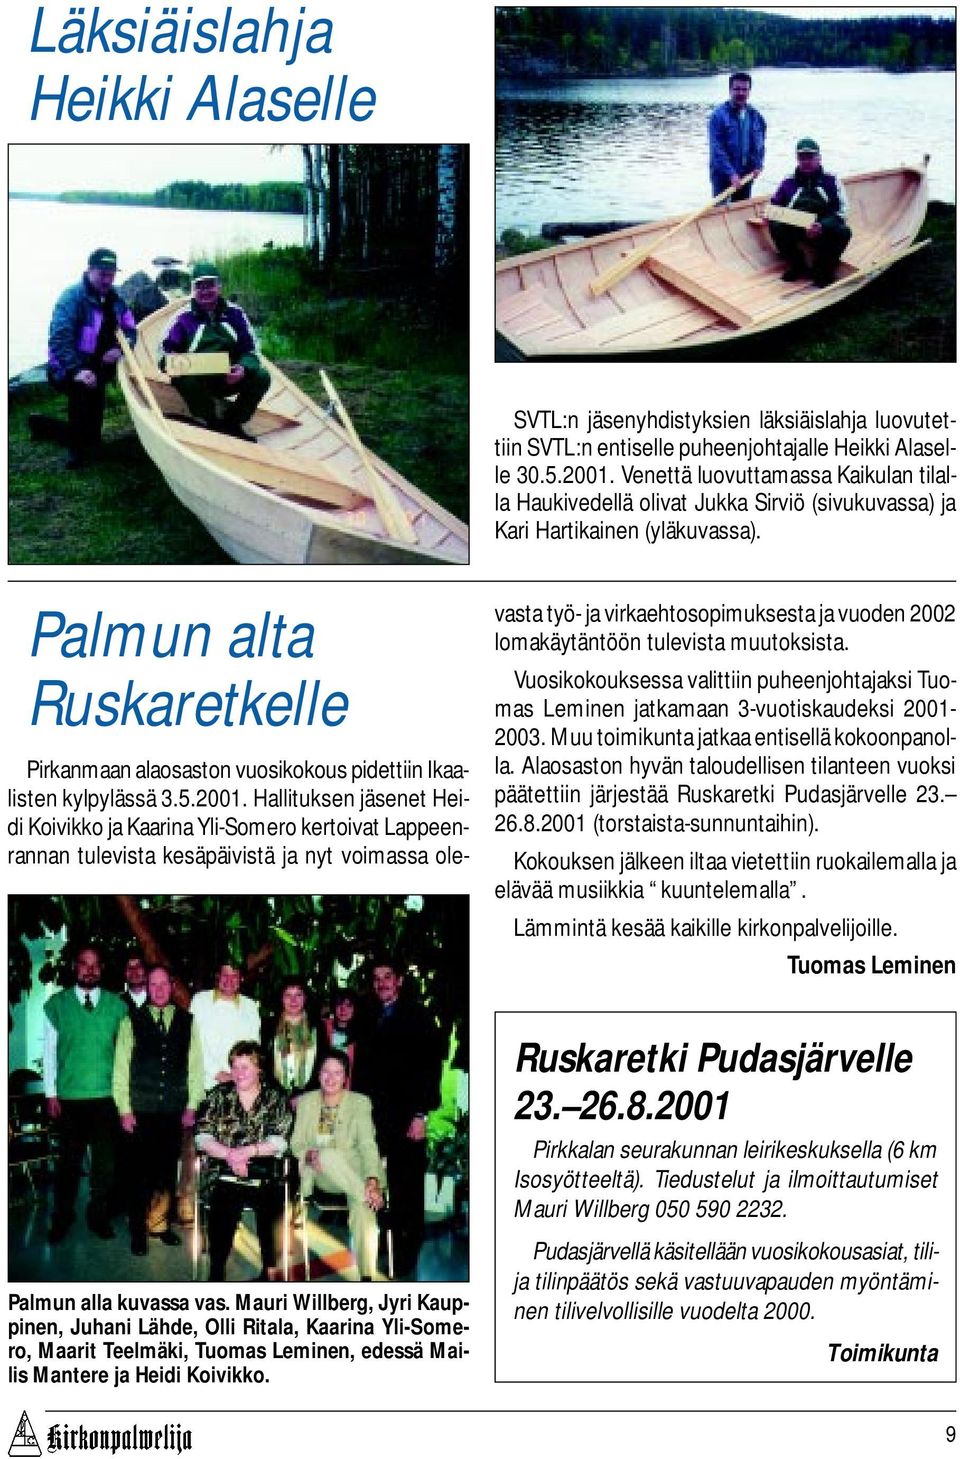 Palmun alta Ruskaretkelle Pirkanmaan alaosaston vuosikokous pidettiin Ikaalisten kylpylässä 3.5.2001.